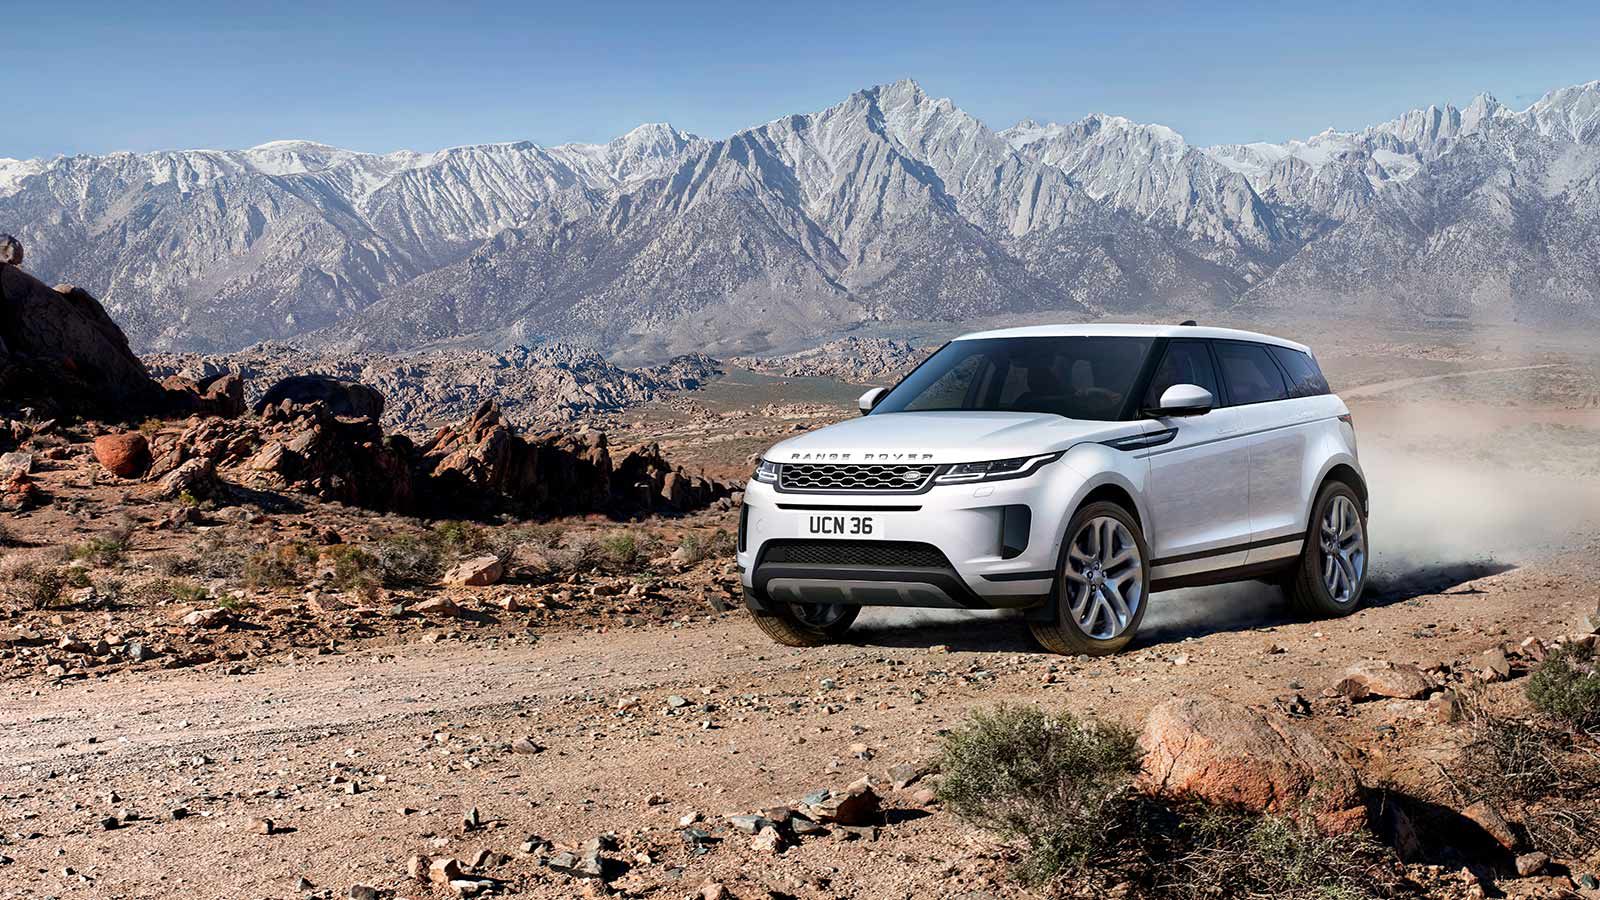 New Range Rover Evoque Compact Luxury Suv Land Rover Kuwait